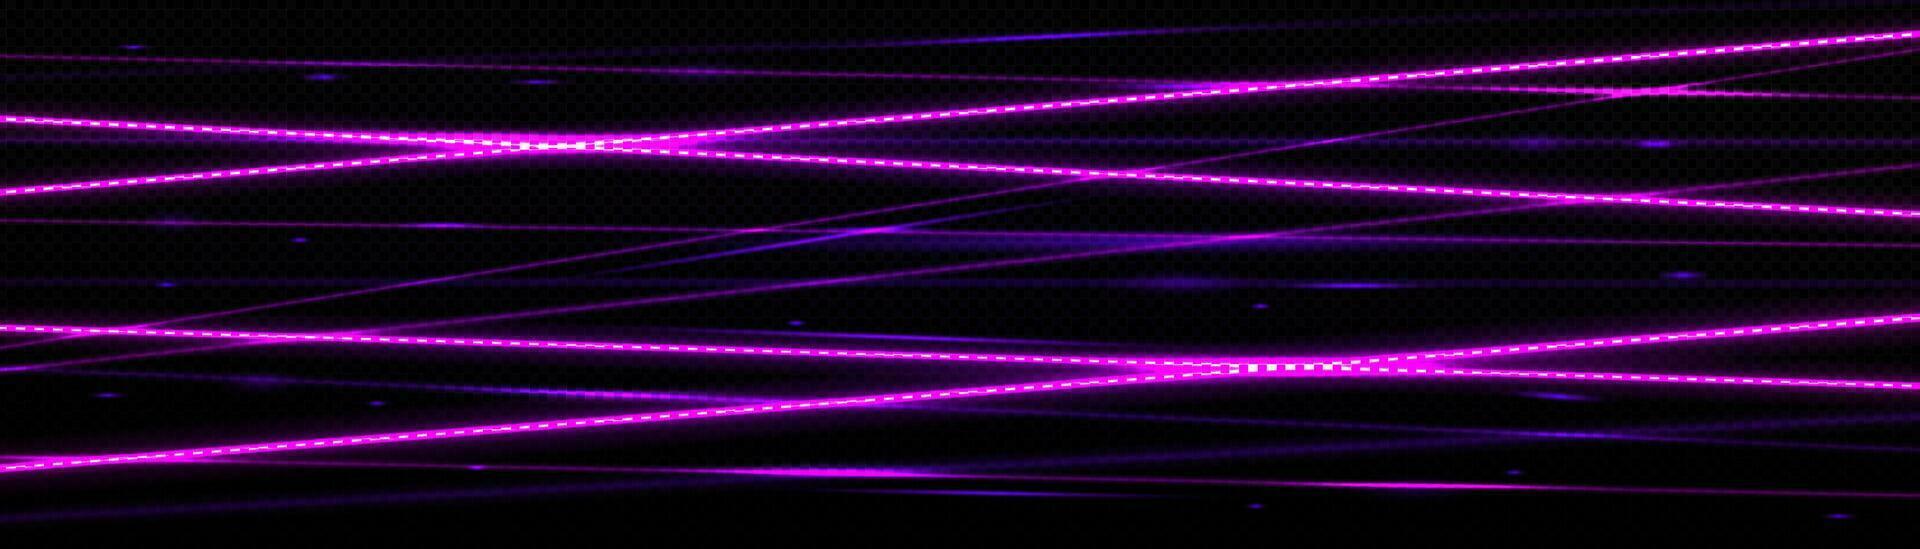 Laser beams, neon light lines effect vector